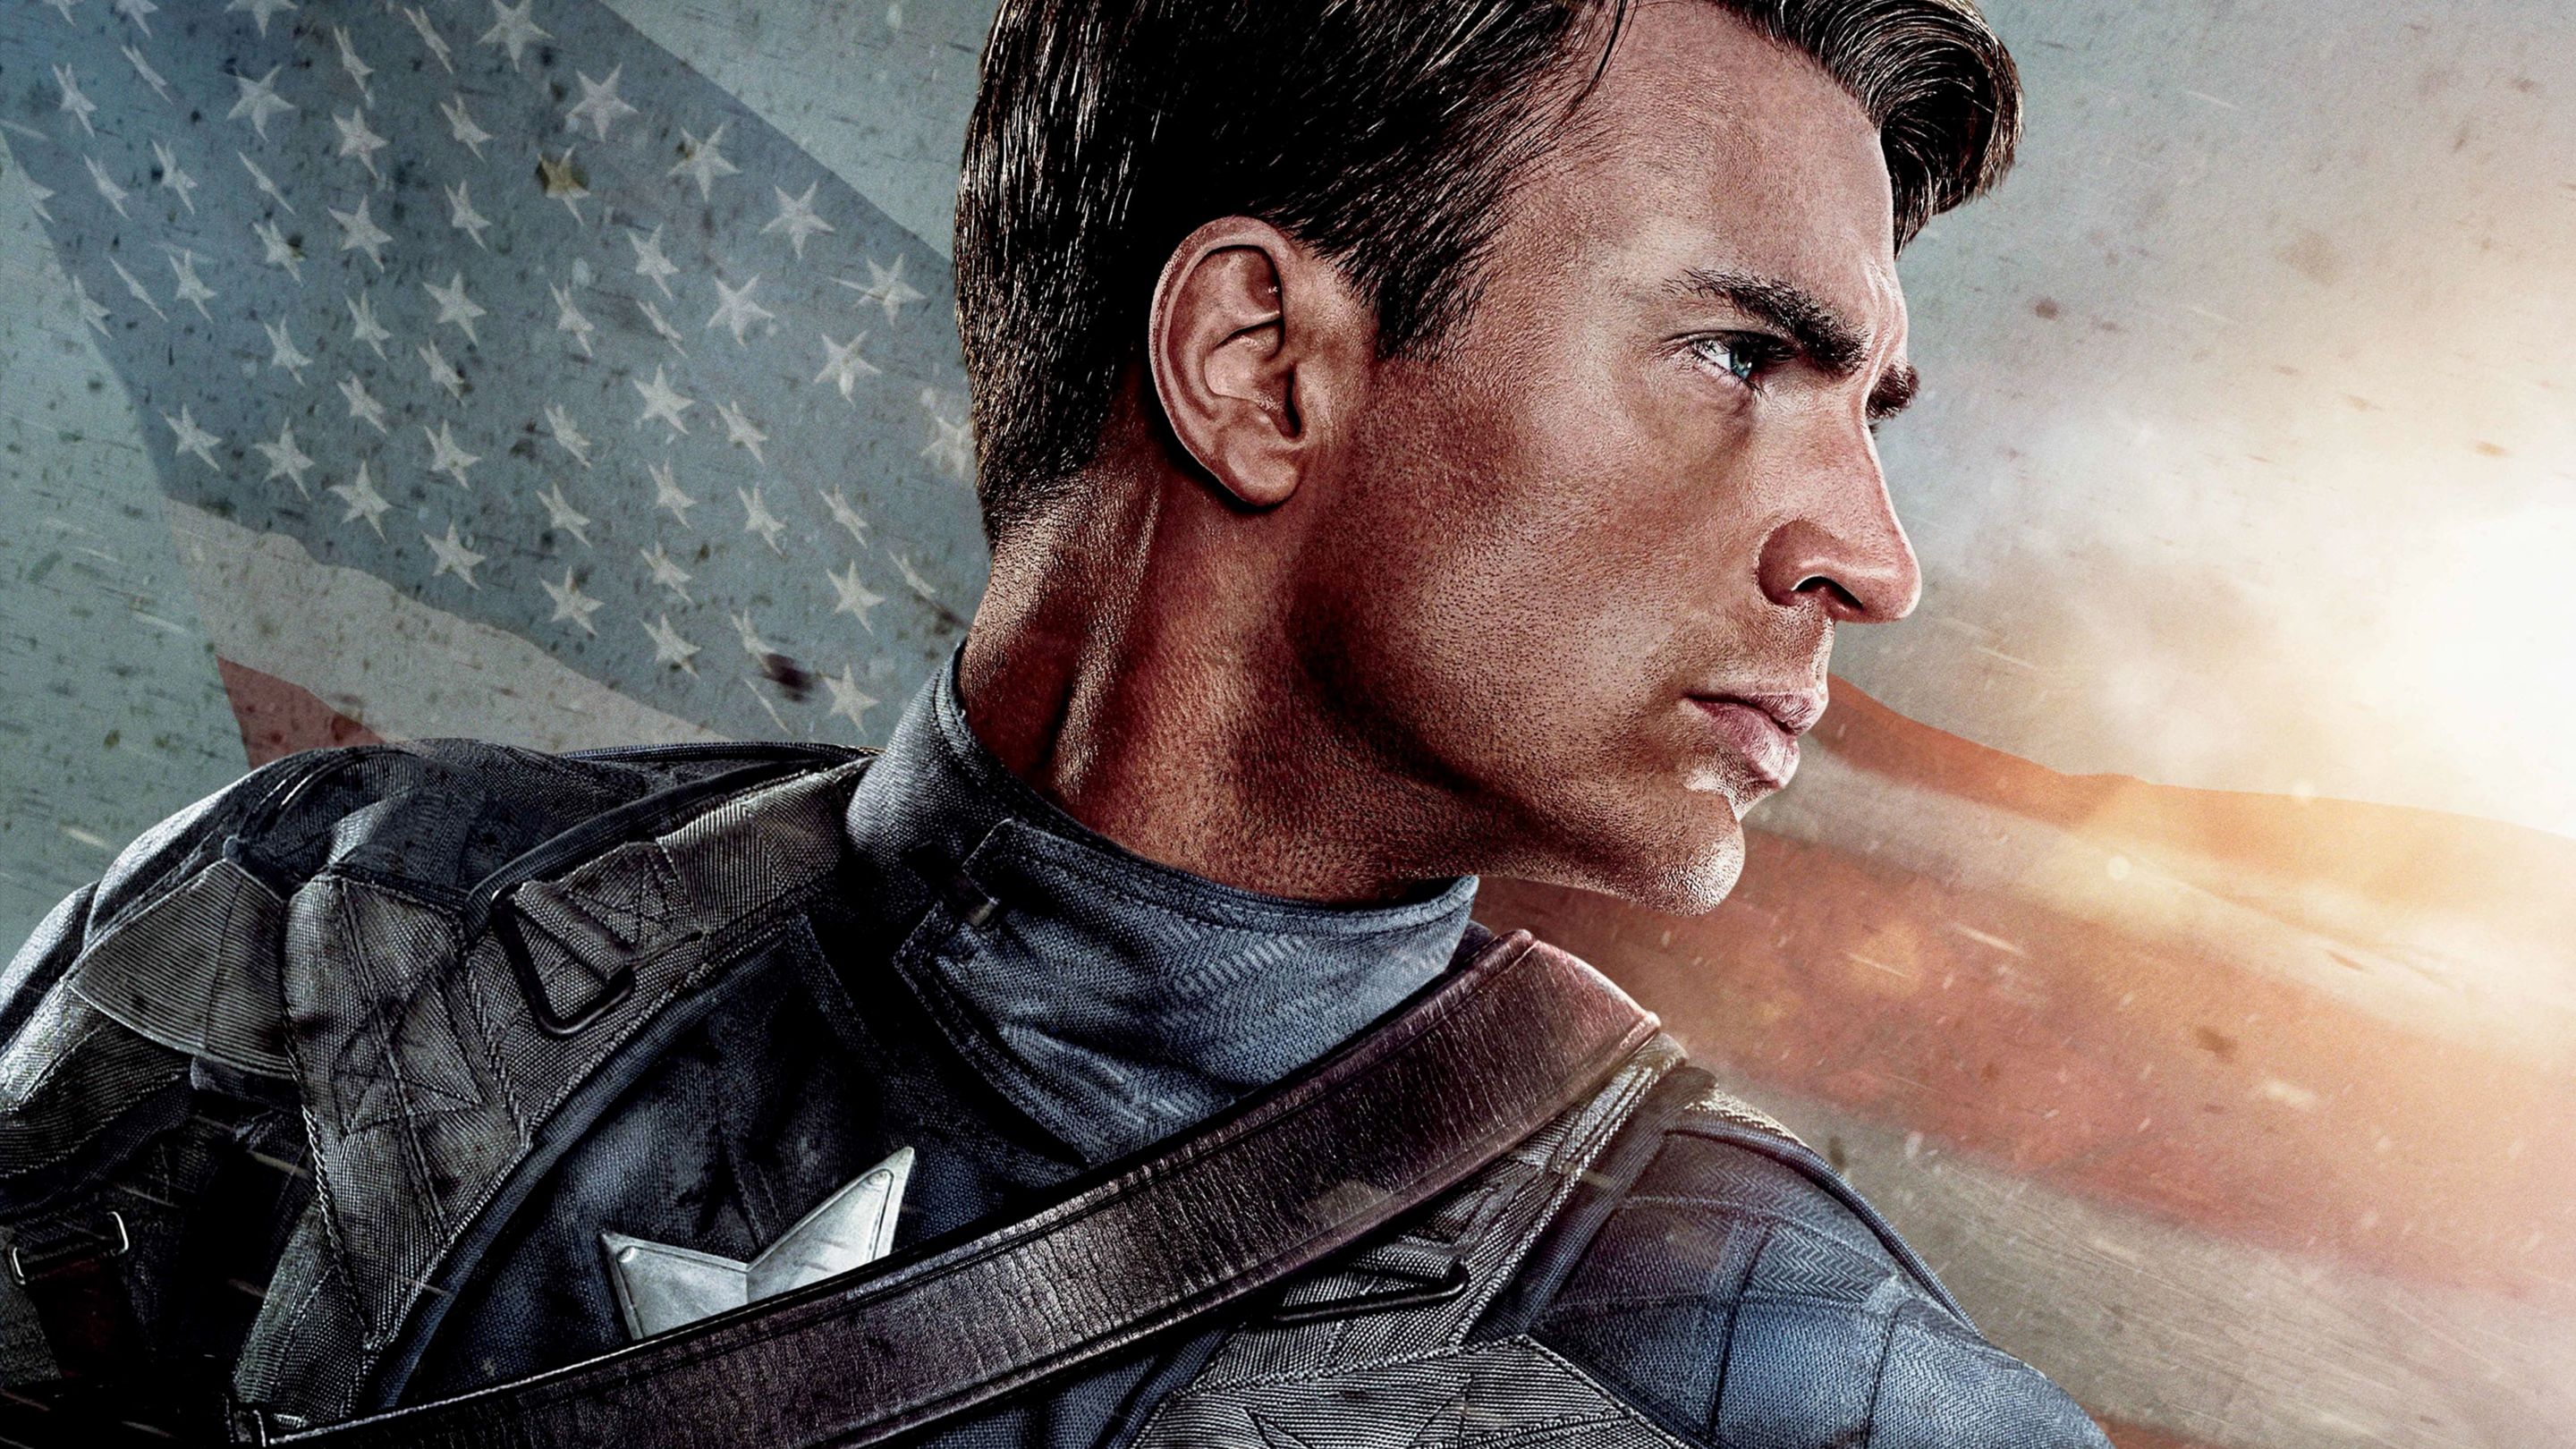 marvel captain america full movie online free